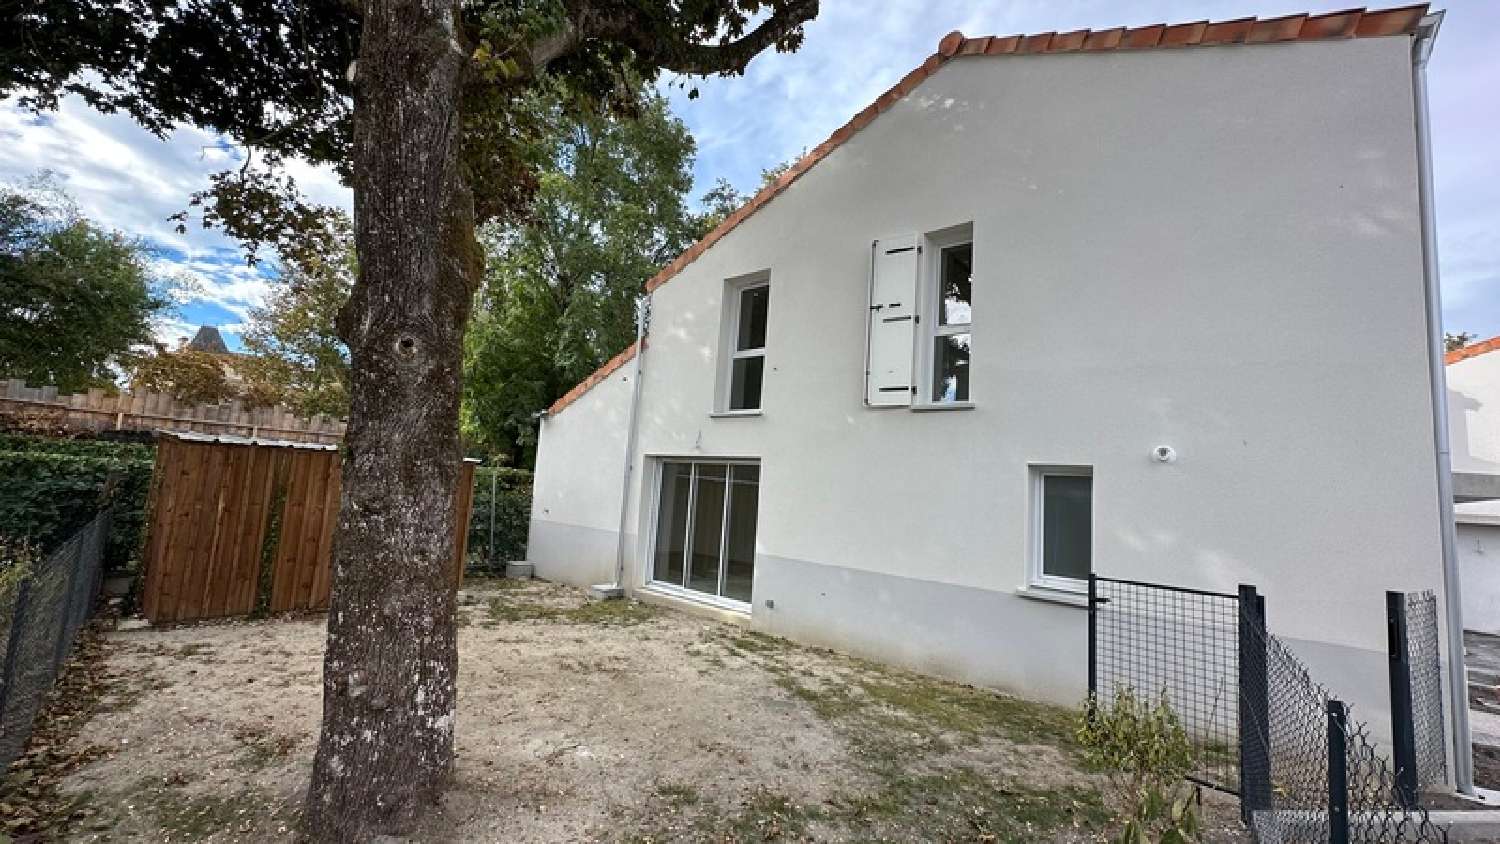  à vendre maison Villenave-d'Ornon Gironde 1